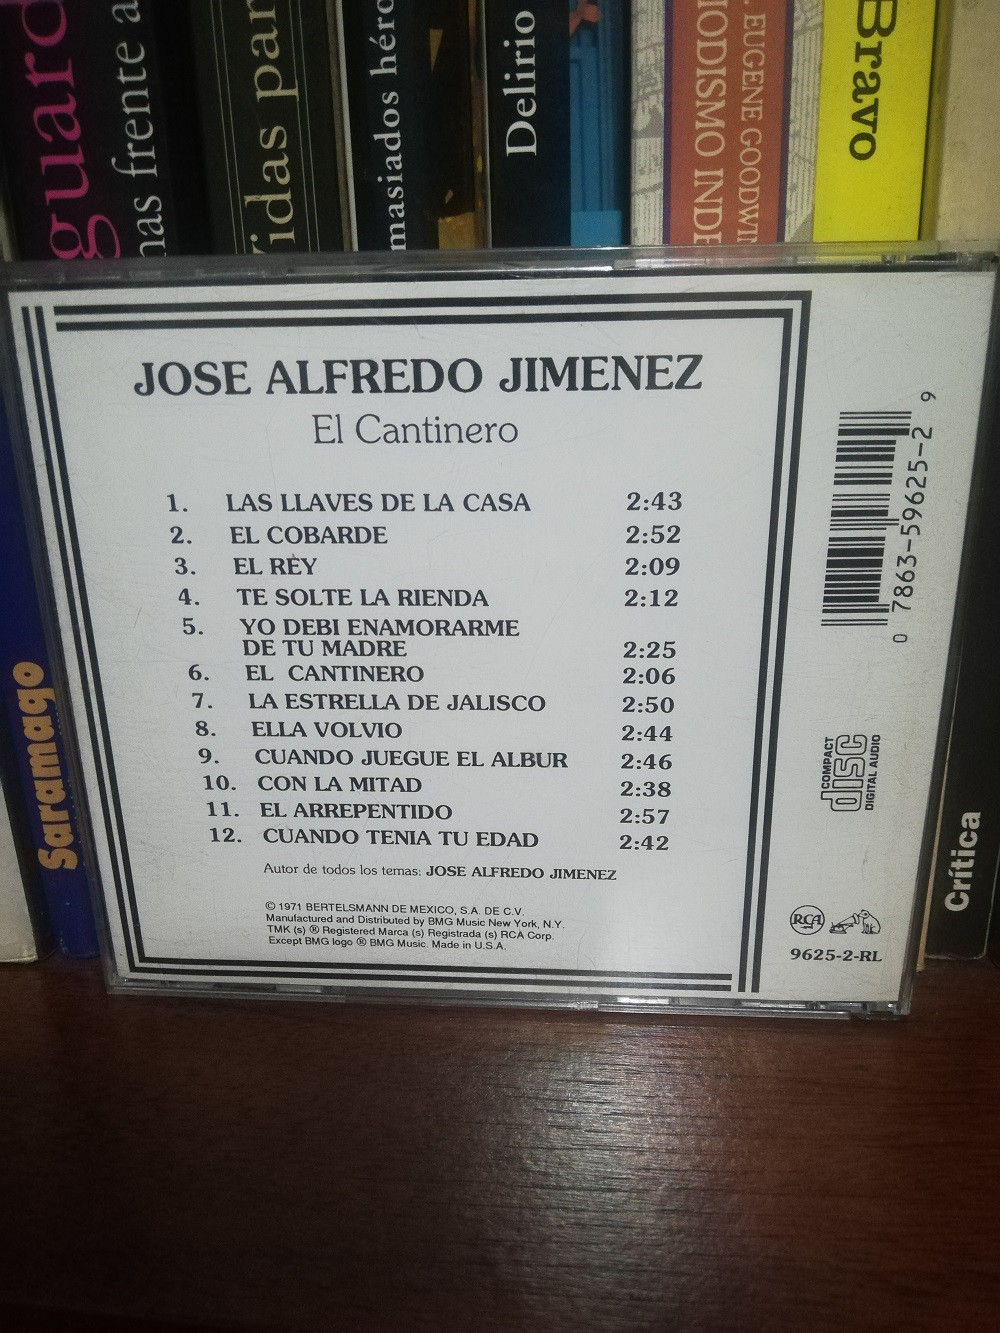 Imagen CD JOSÉ ALFREDO JIMENEZ - EL REY CANTINERO 2